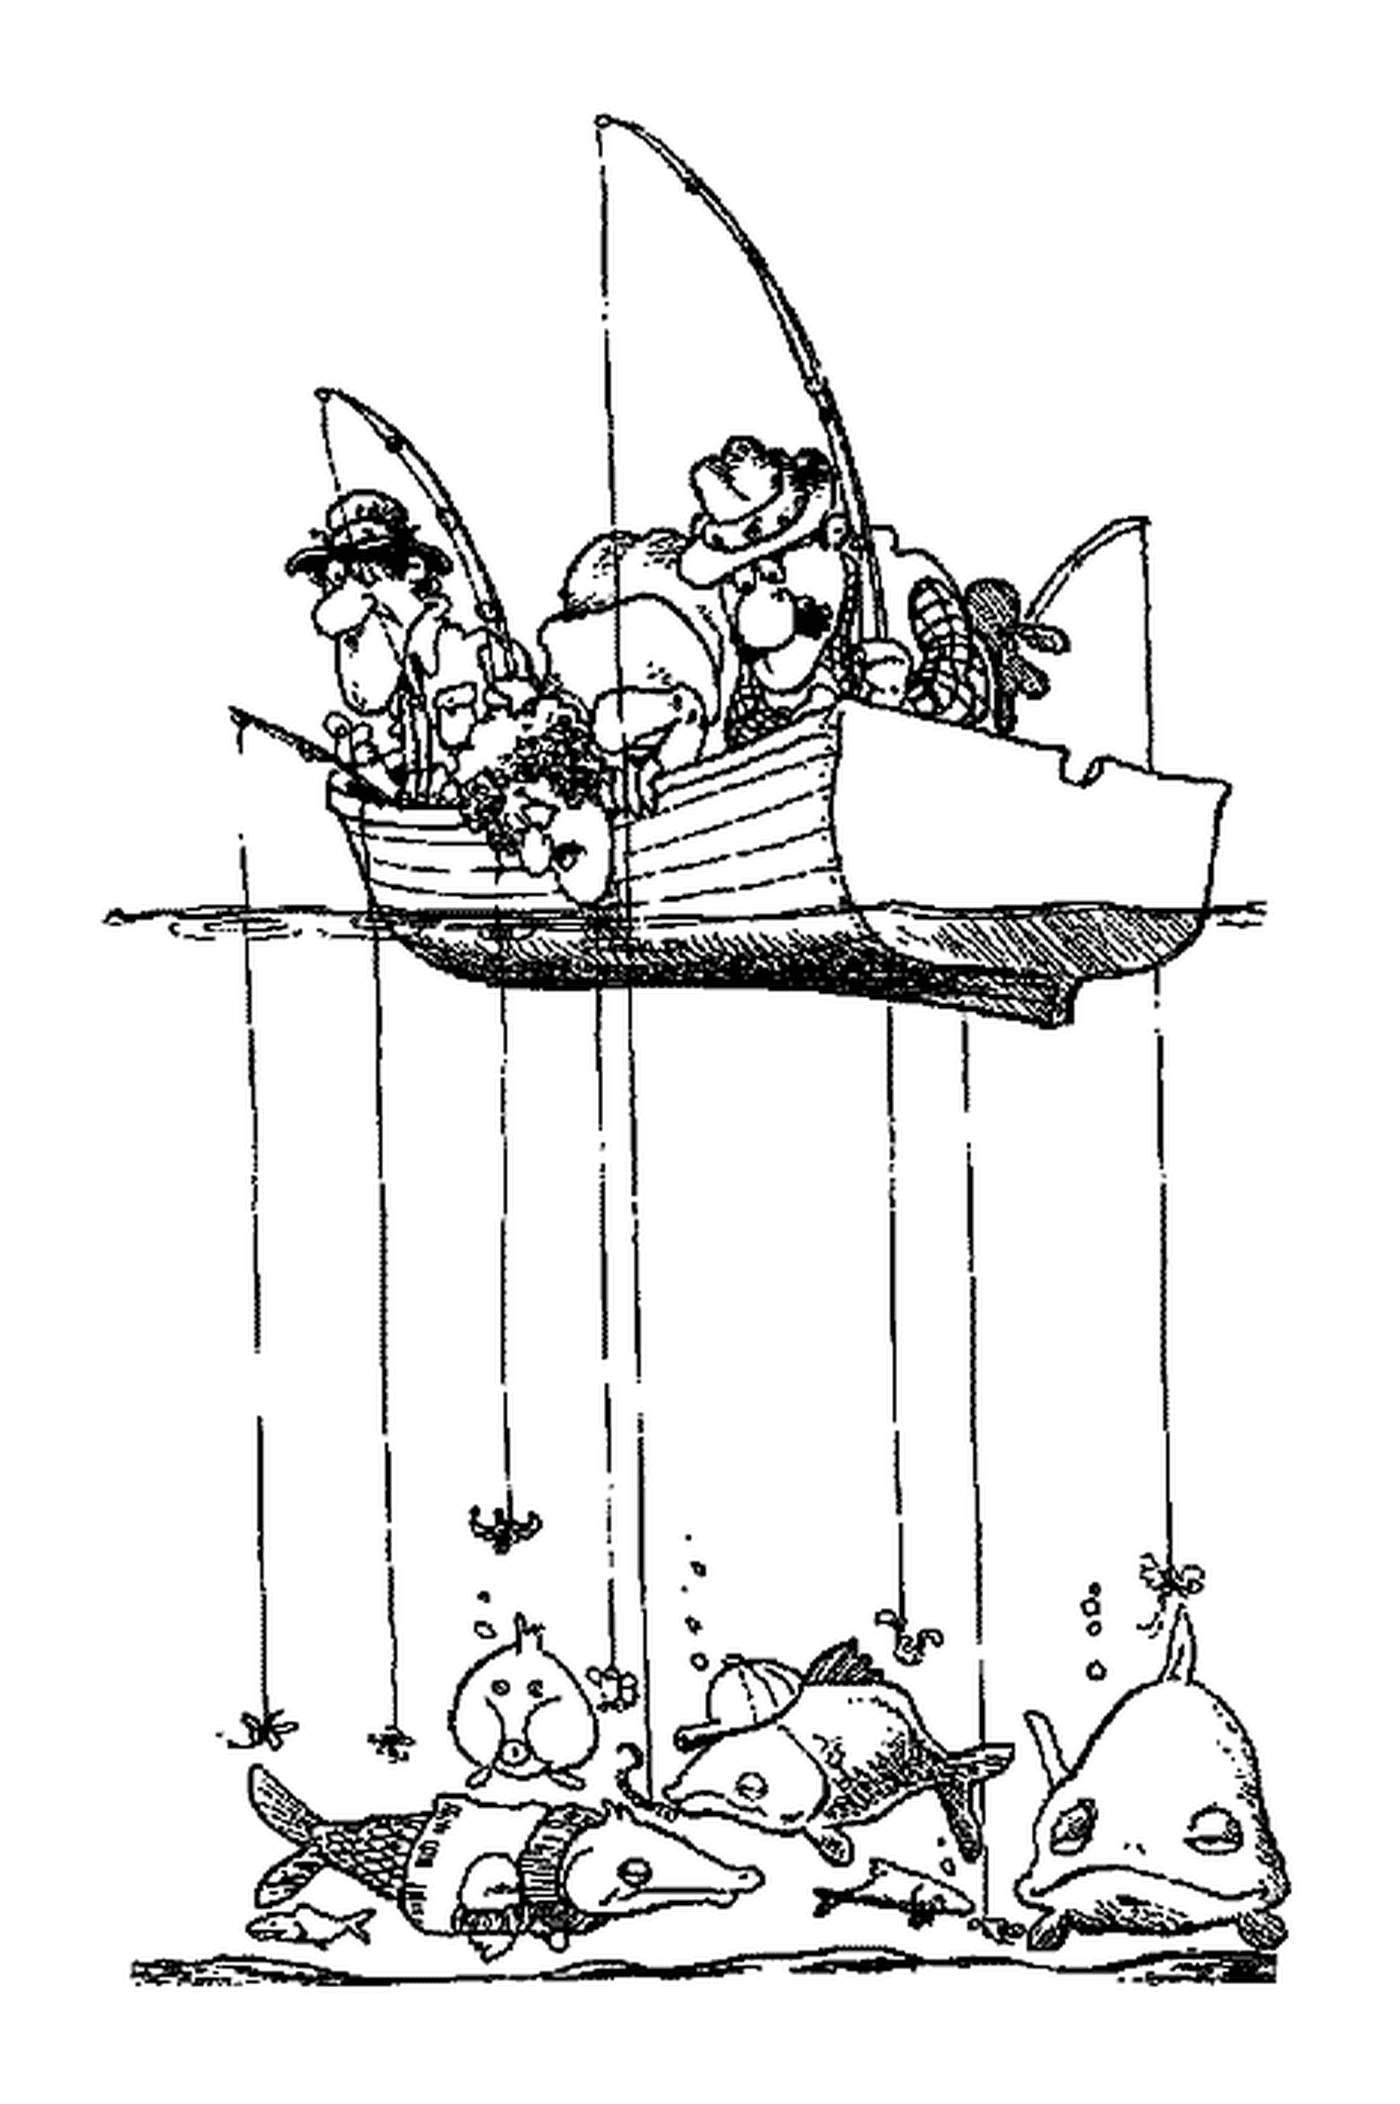  Лодка, заполненная рыбаками 